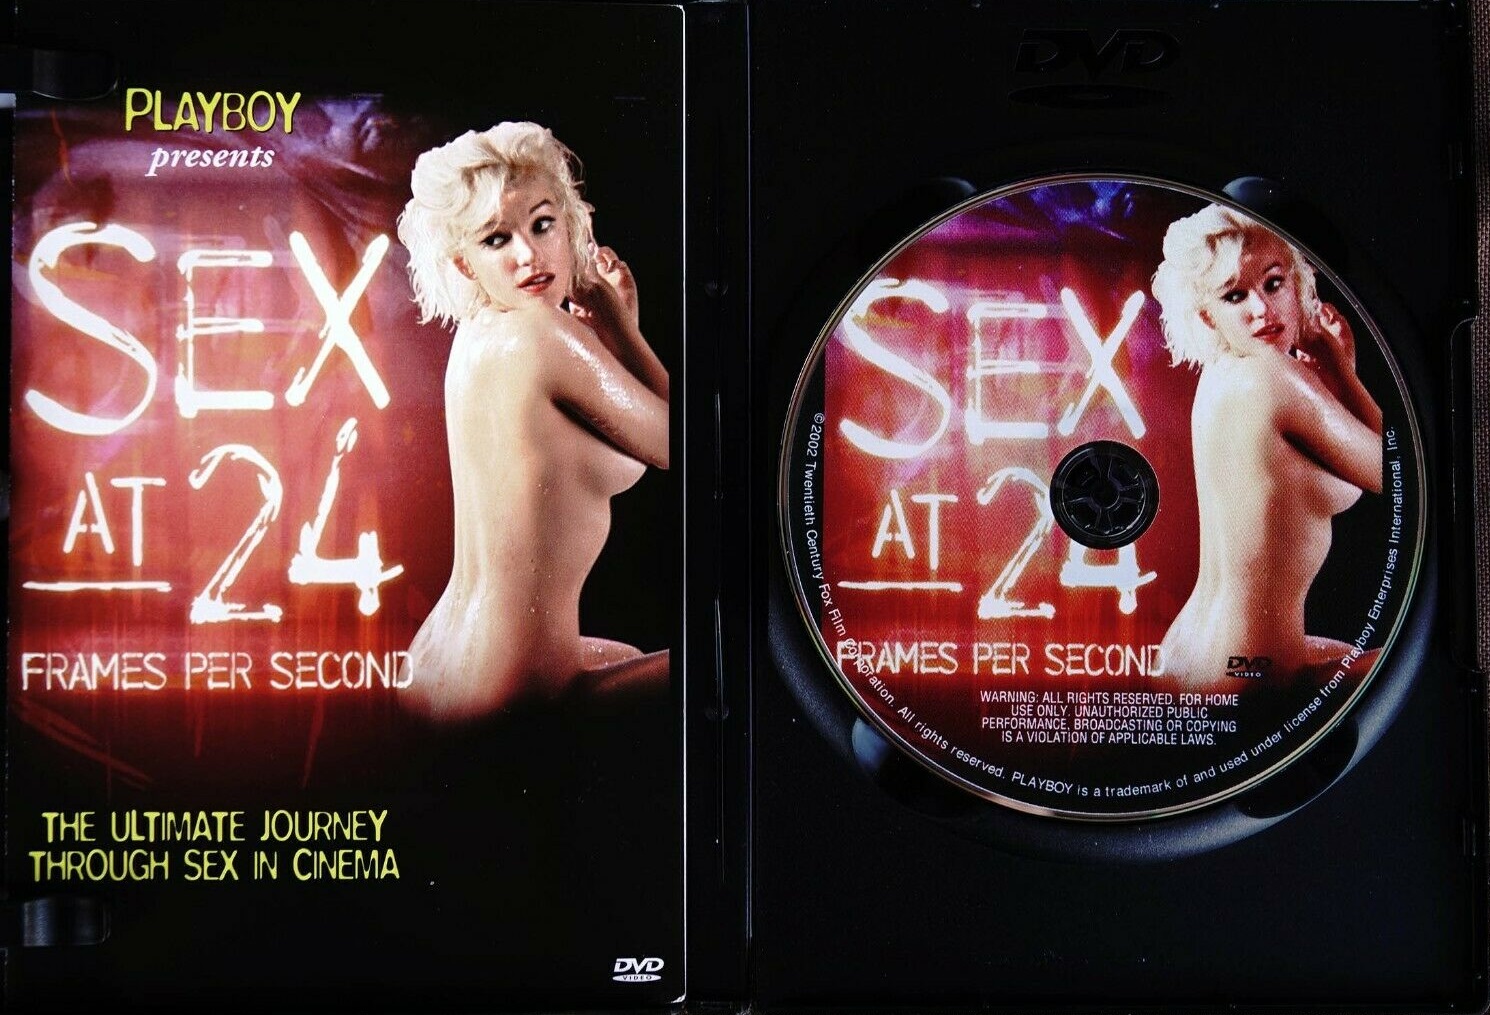 Sex at 24 Frames Per Second (2003) Screenshot 5 